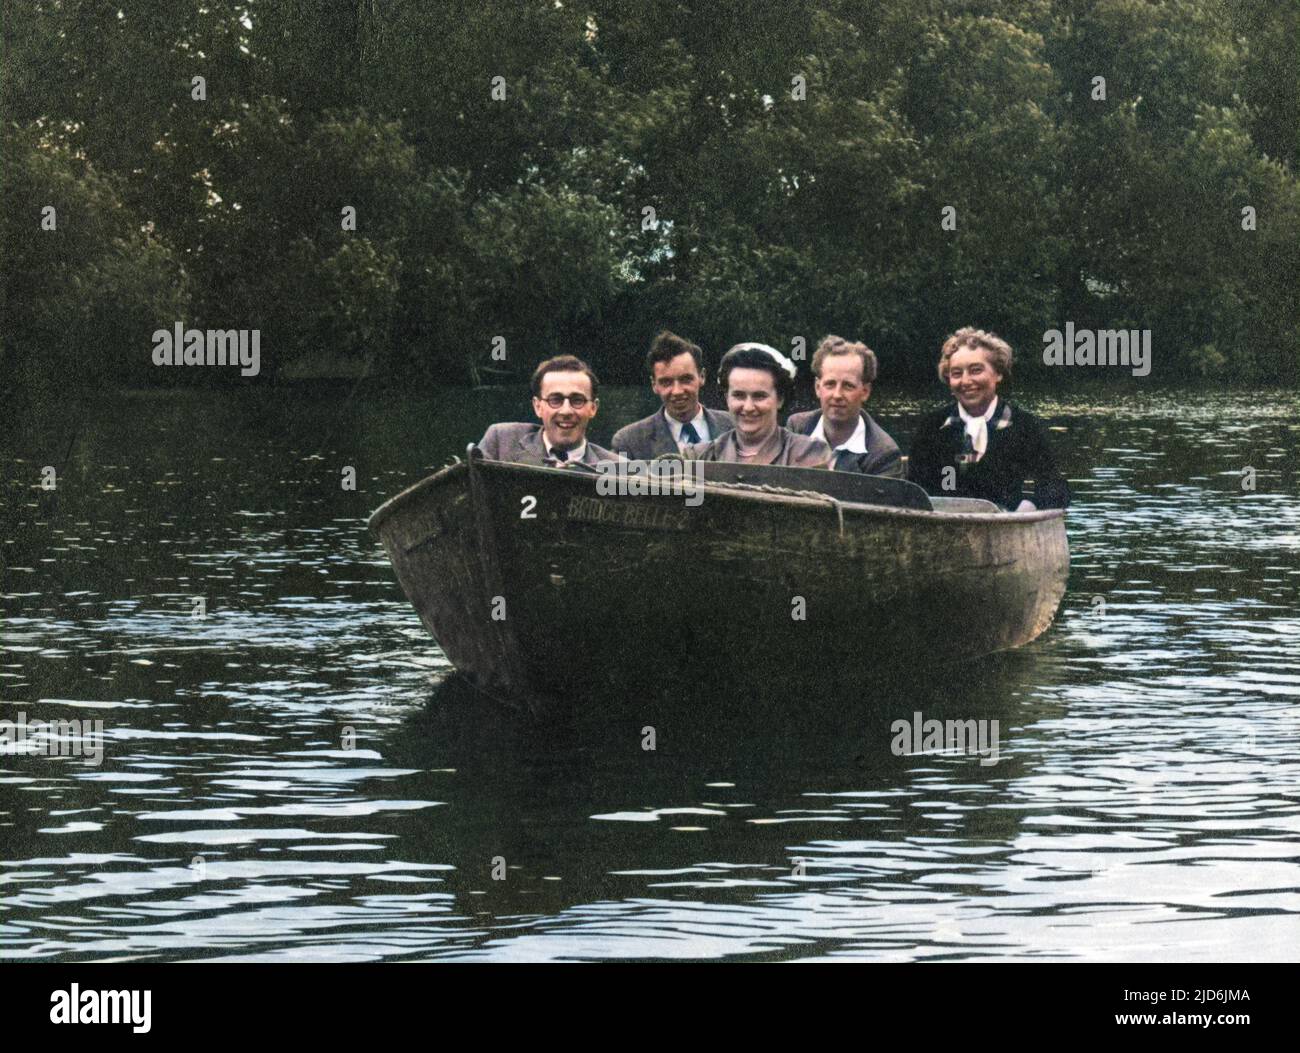 Fünf Freunde bei einem sehr kleinen Motorstart ('The Bridge Belle 2') machen einen fröhlichen Ausflug auf der Themse! Kolorierte Version von: 10794447 Datum: Anfang 1950s Stockfoto